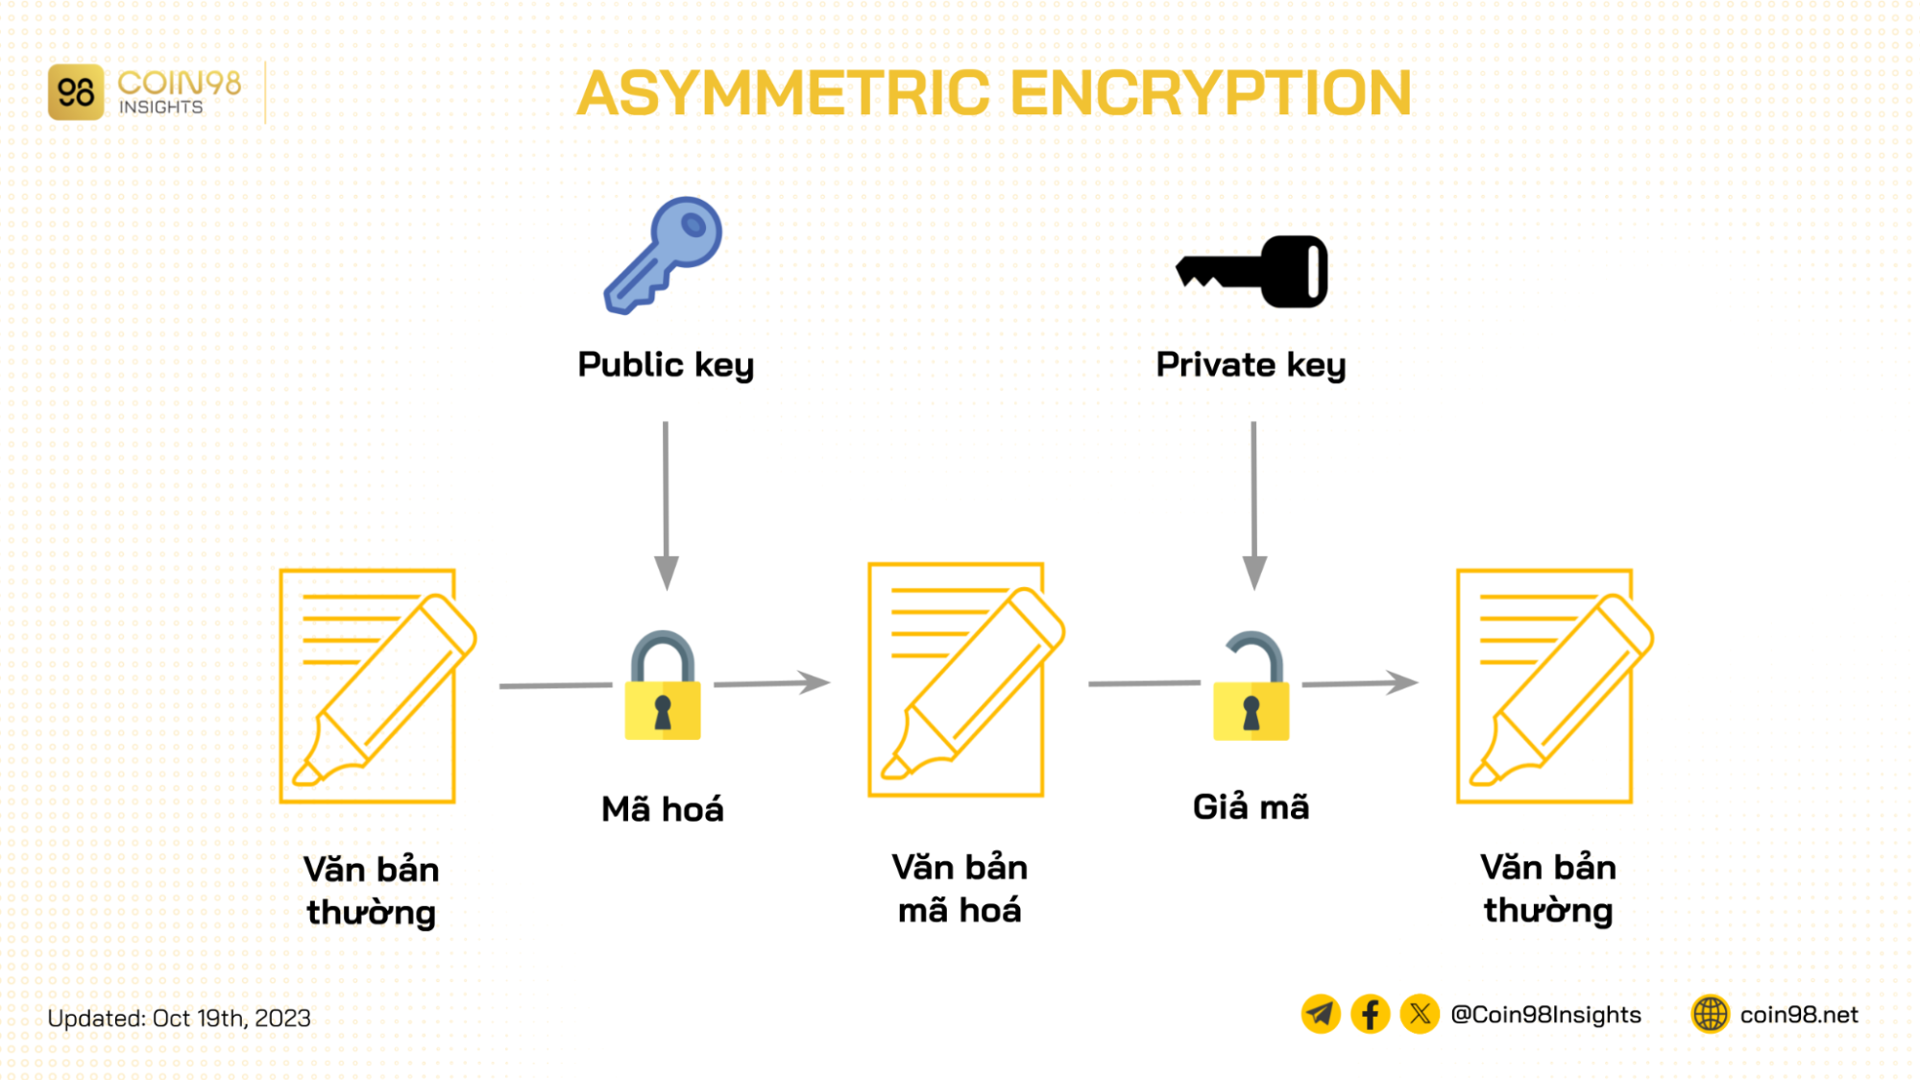 asymmetric encryption